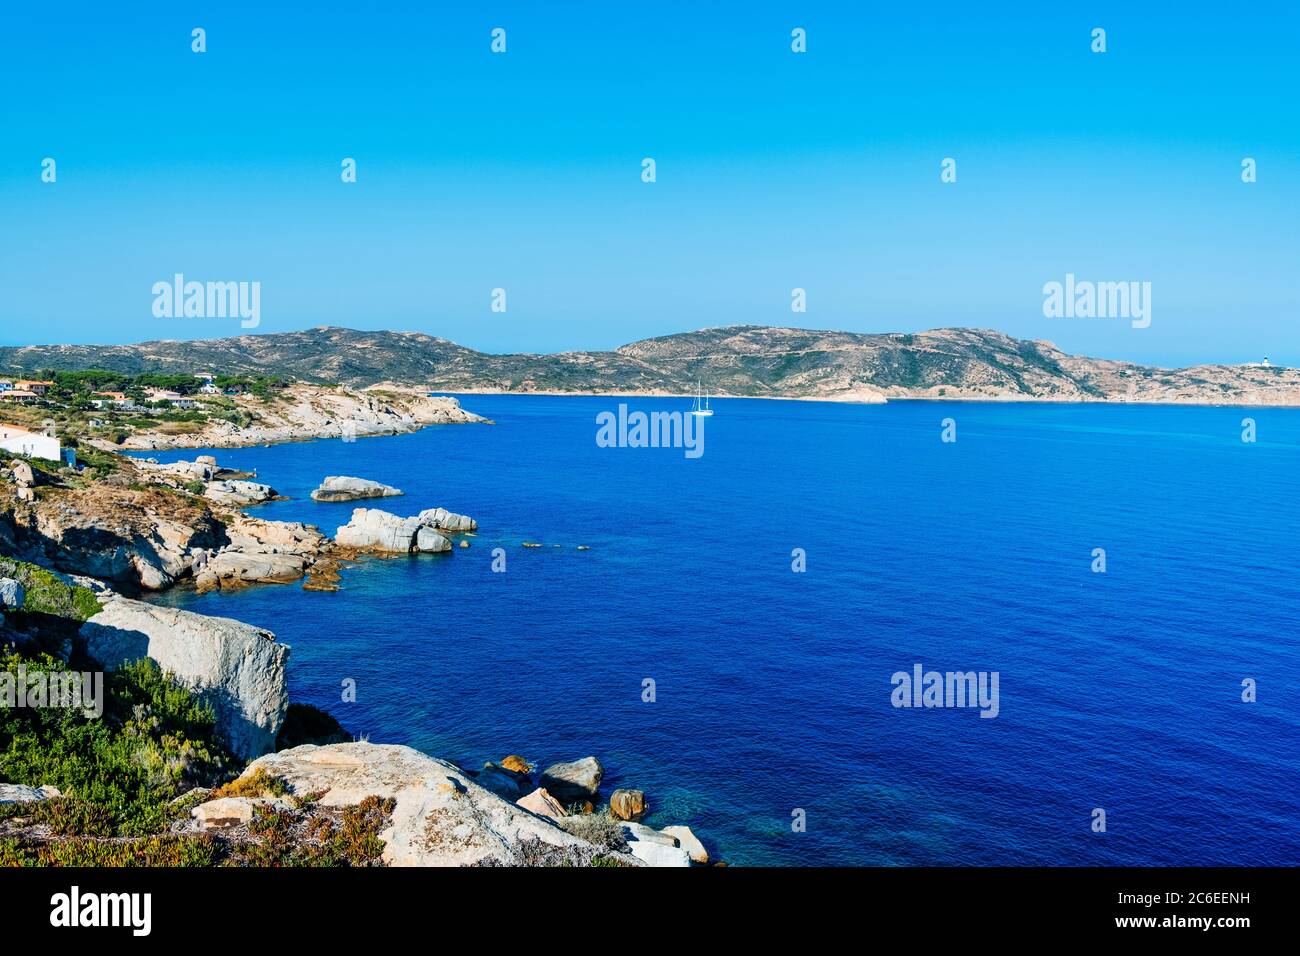 Une vue sur le promontoire de Punta San Francesco à Calvi, Corse, entourée par la mer Méditerranée, et la Punta Revellata promontoire dans la backgroun Banque D'Images